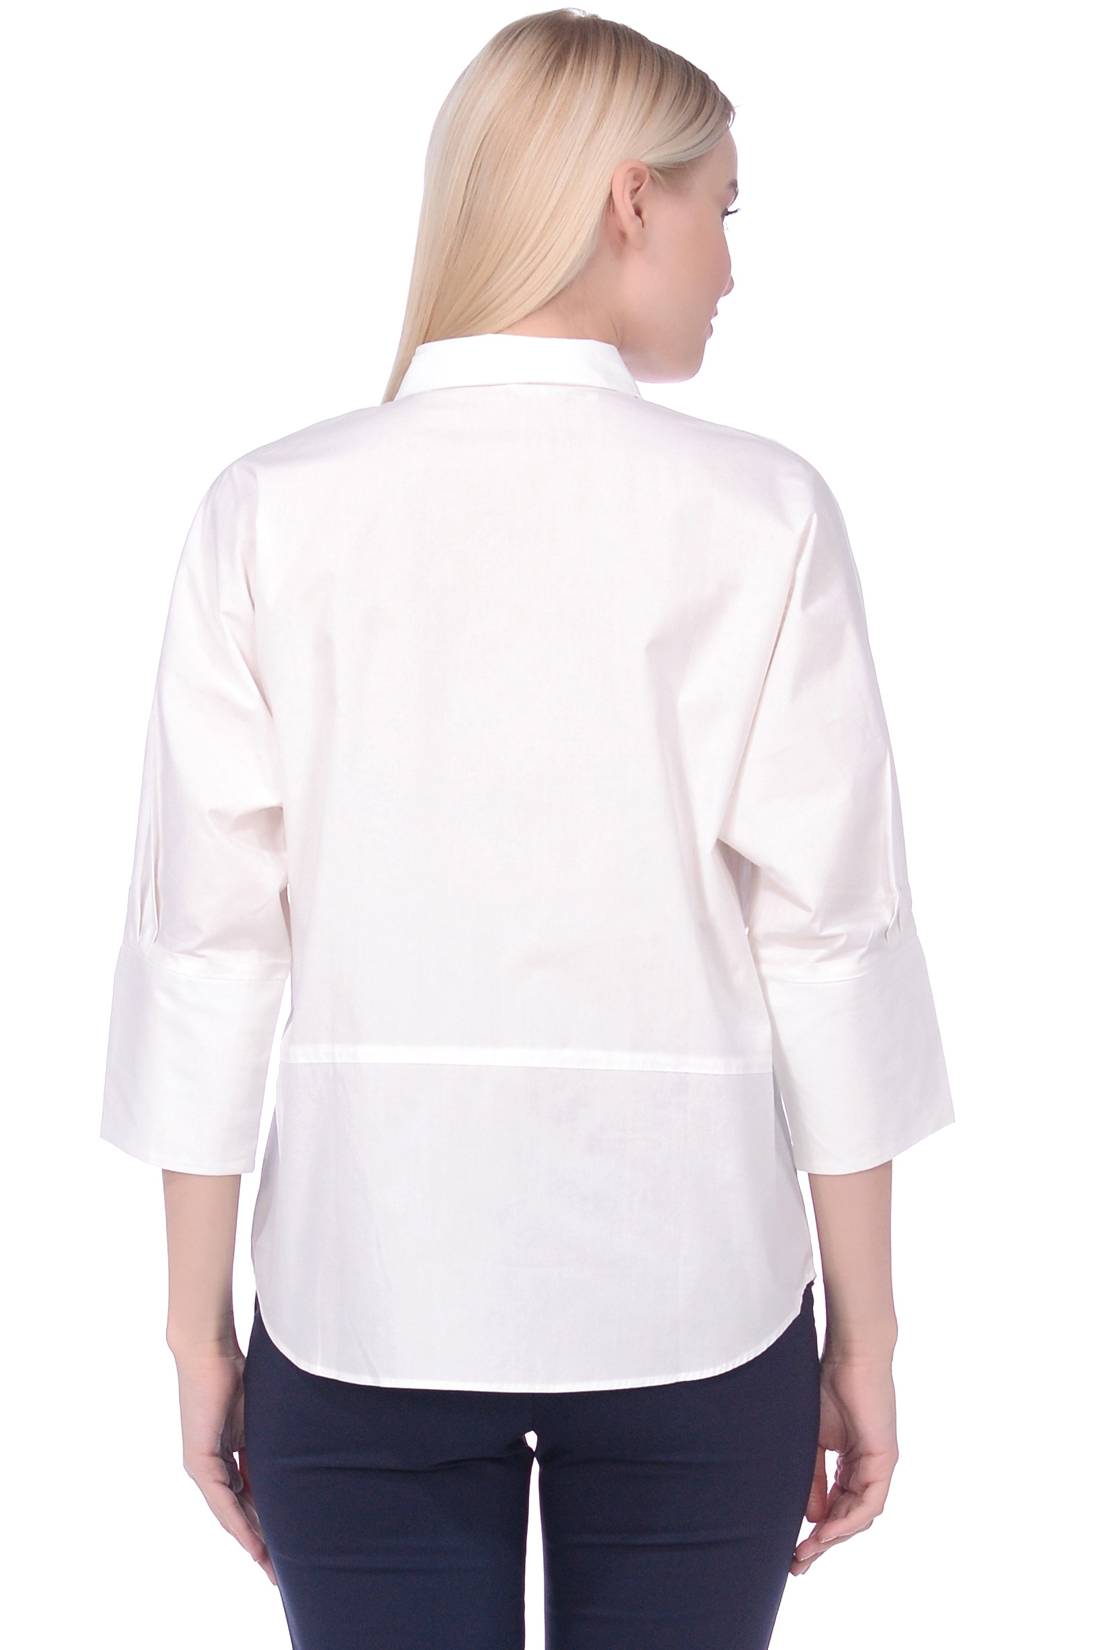 Блузка свободного кроя (арт. baon B179012), размер XXL, цвет белый Блузка свободного кроя (арт. baon B179012) - фото 3